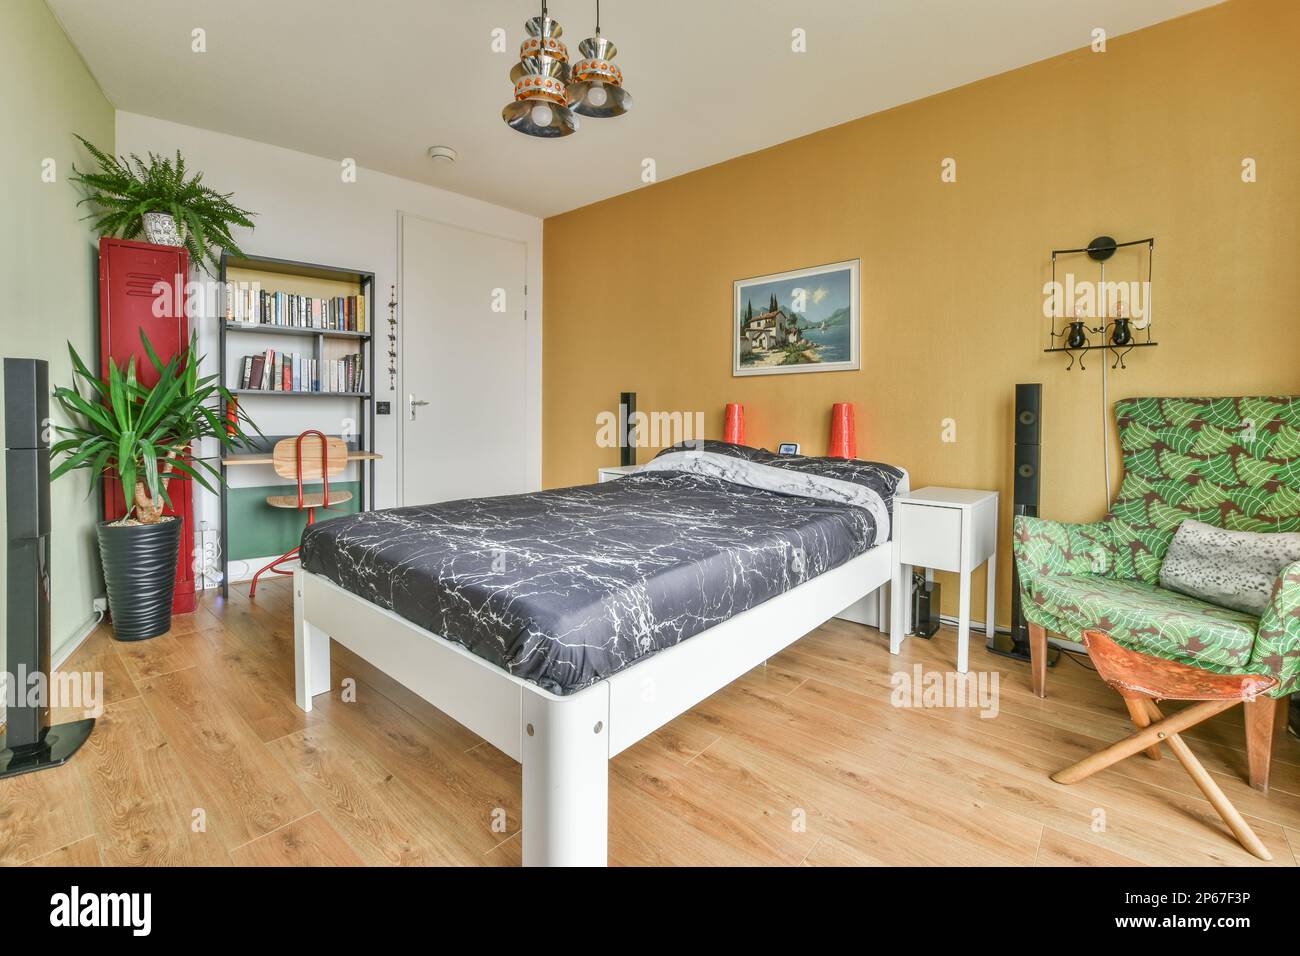 Ein Schlafzimmer mit einem Bett, Stuhl und Büchern auf den Regalen vor dem Bett sind gelbe Wände Stockfoto